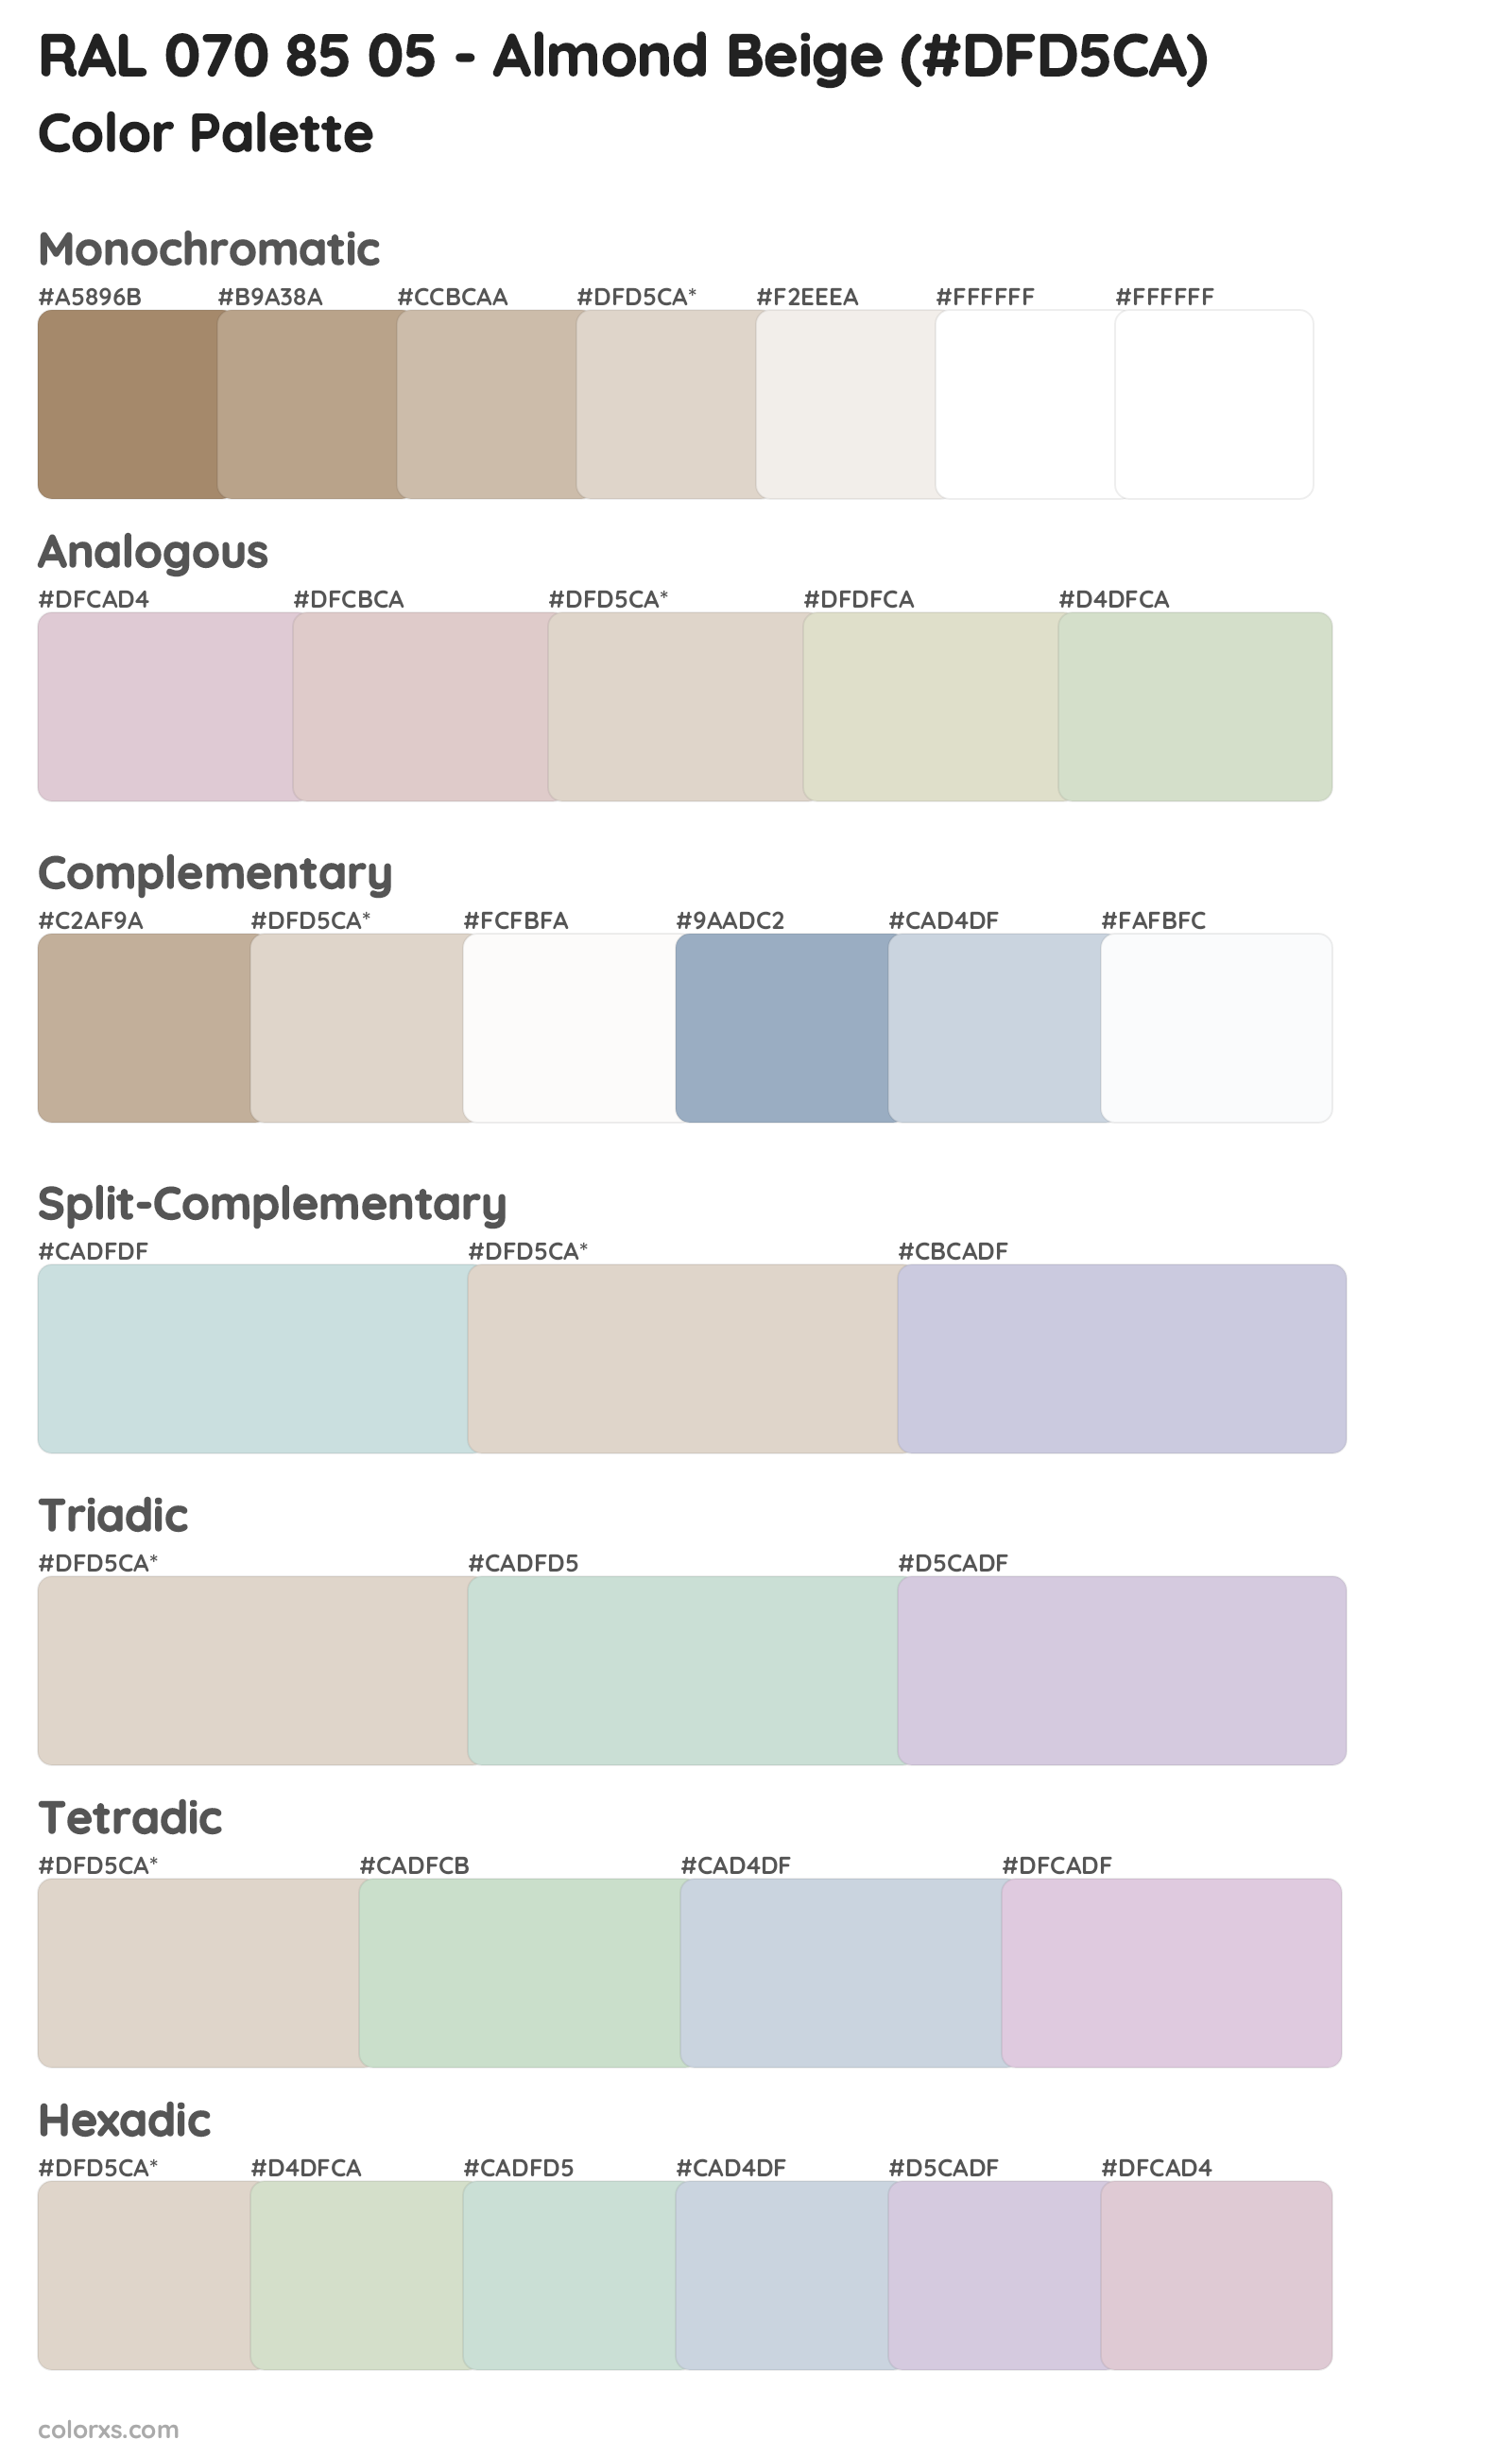 RAL 070 85 05 - Almond Beige Color Scheme Palettes